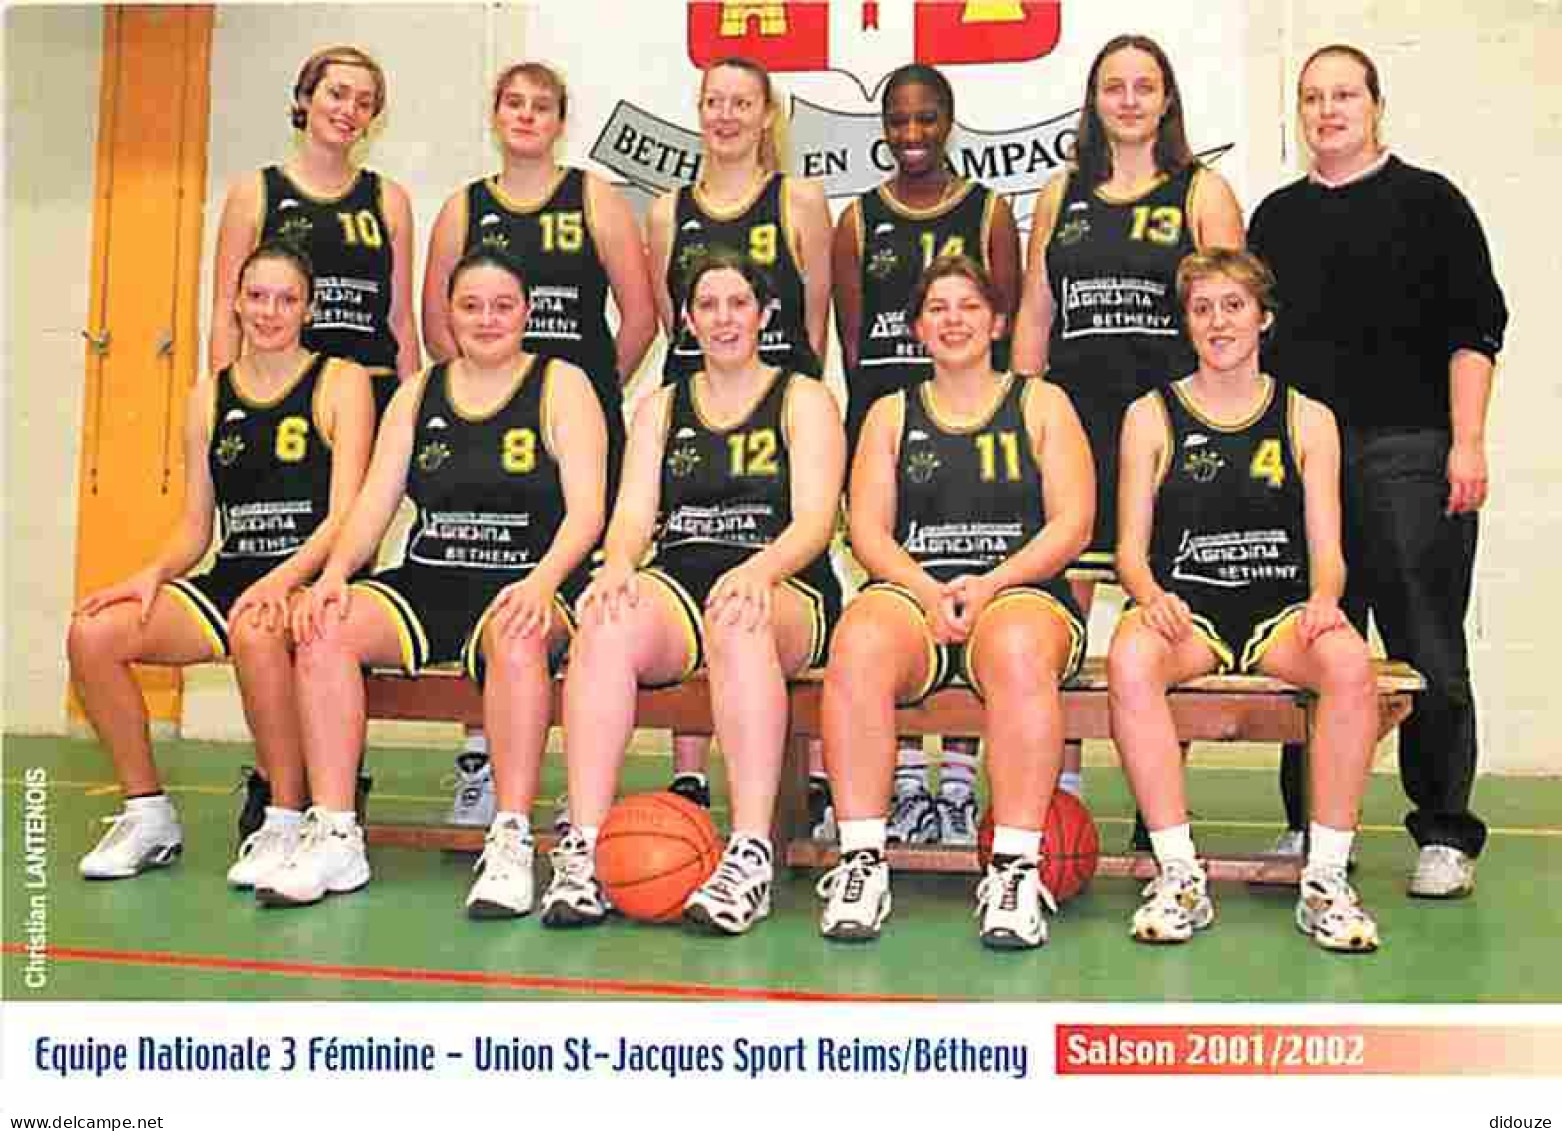 Sports - Basket Ball - Reims - Union St Jacques Sport Reims Béthemy- Equipe Nationale 3 Féminine - Saison 2001 2002 - CP - Basketbal